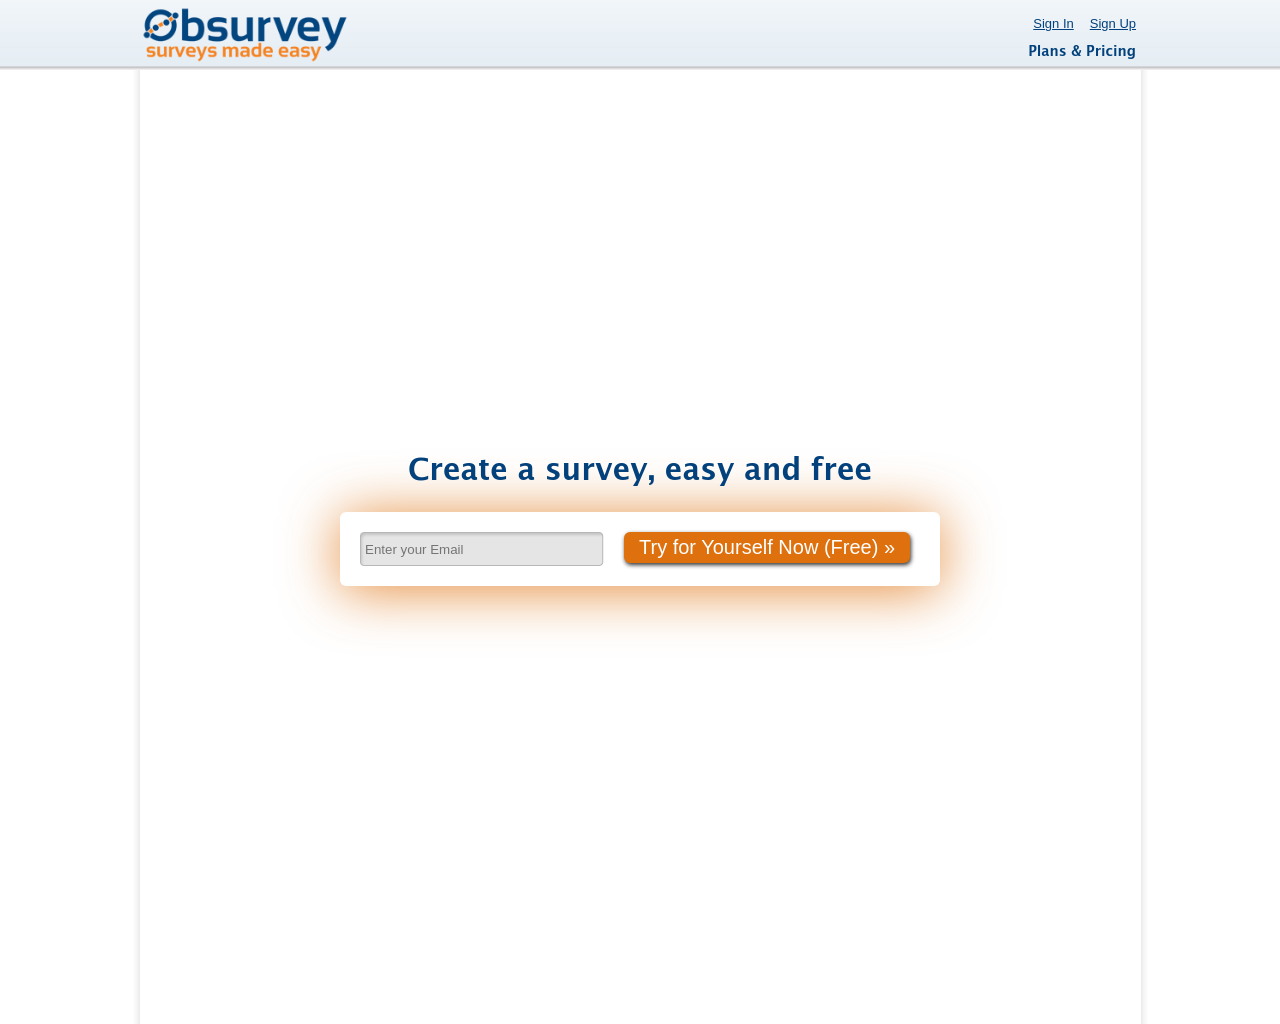 obsurvey.com